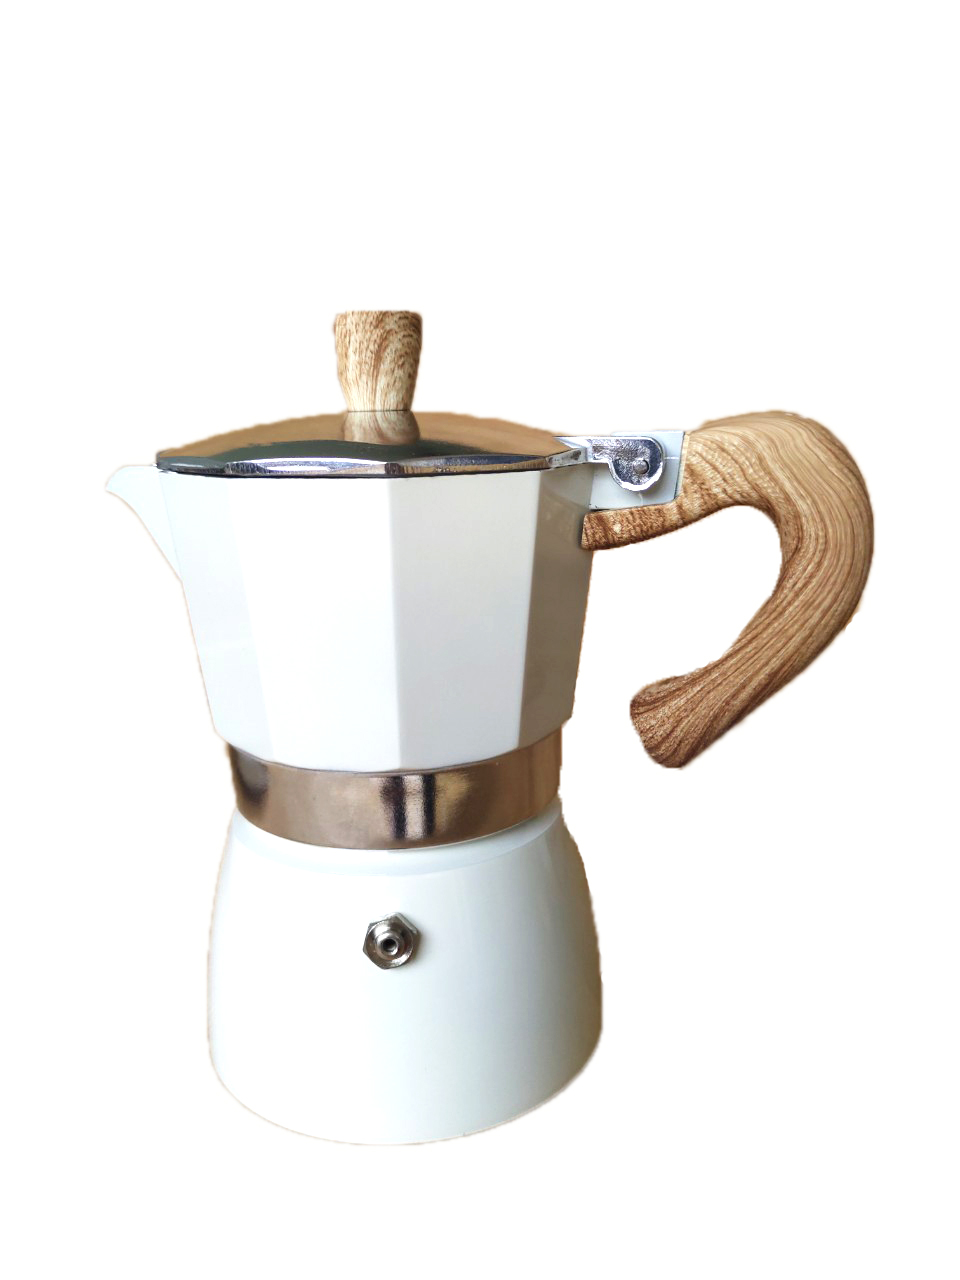 Bộ bếp điện mini và bình pha cà phê espresso Ý màu trắng sữa